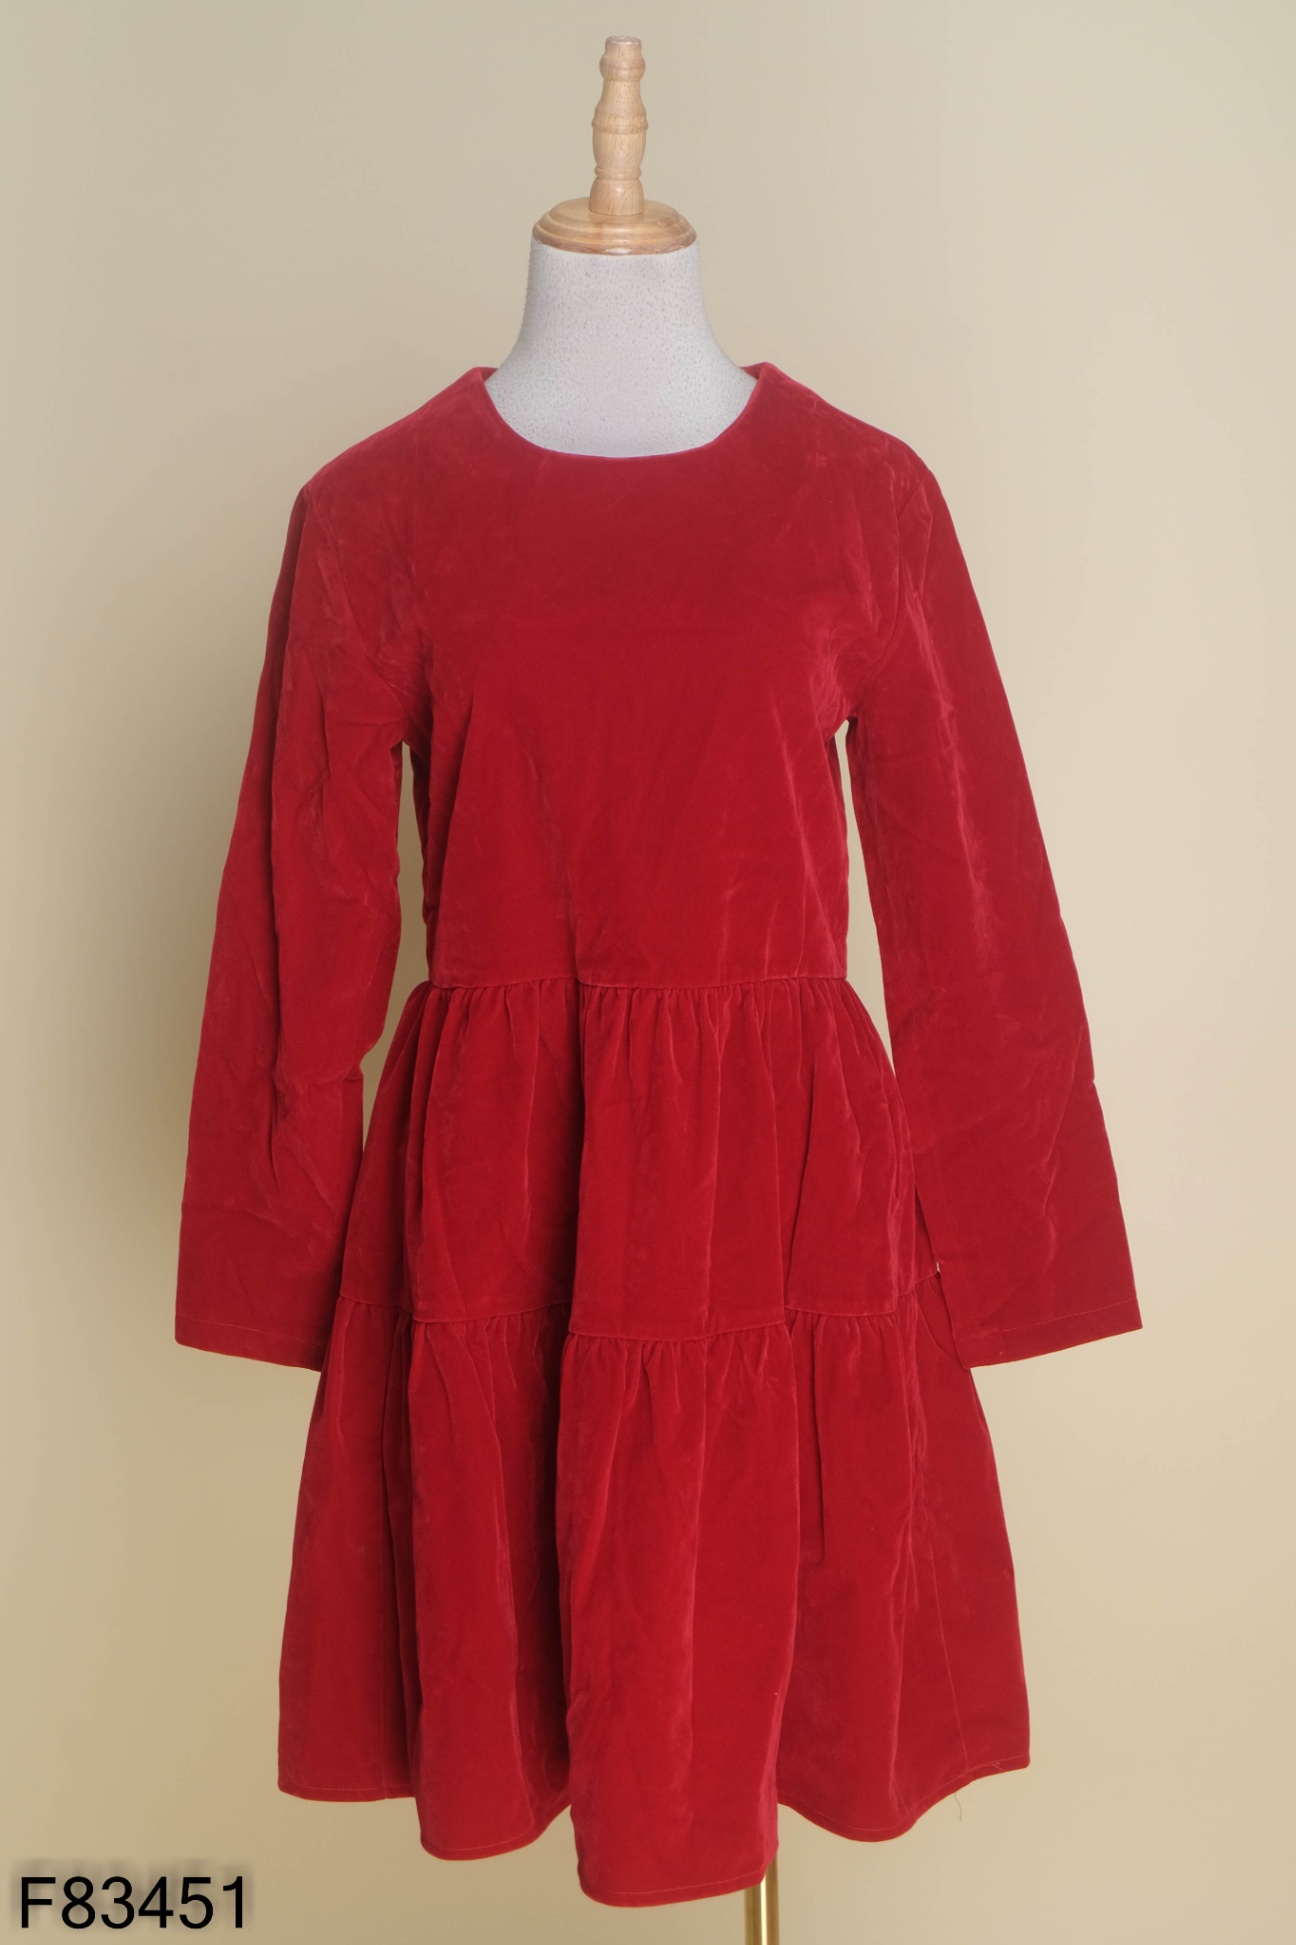 Váy xòe nhung đỏ nhún tay - 3571